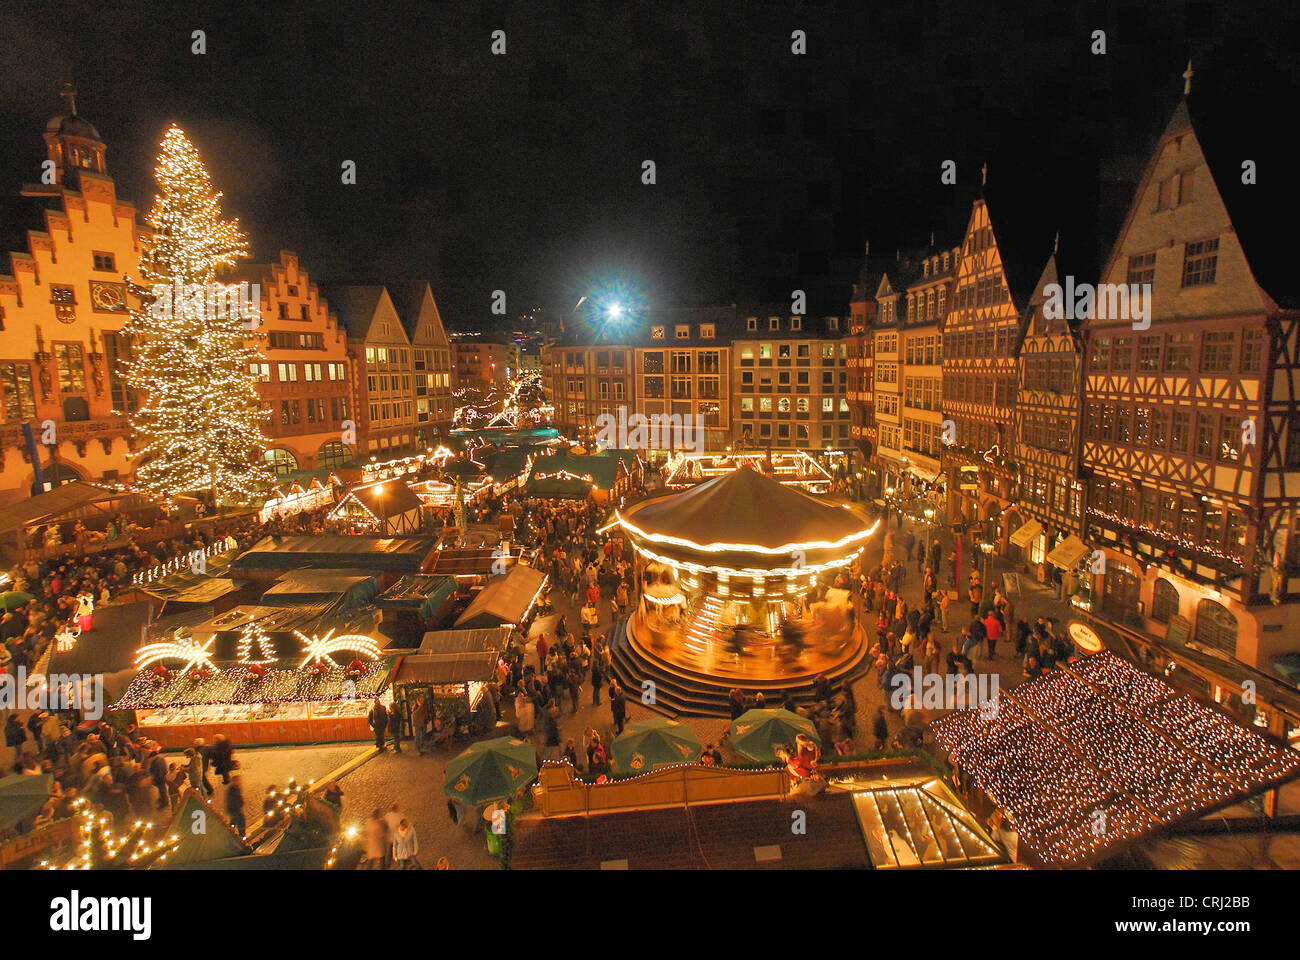 Christmas market, Germany, Frankfurt am Main Stock Photo